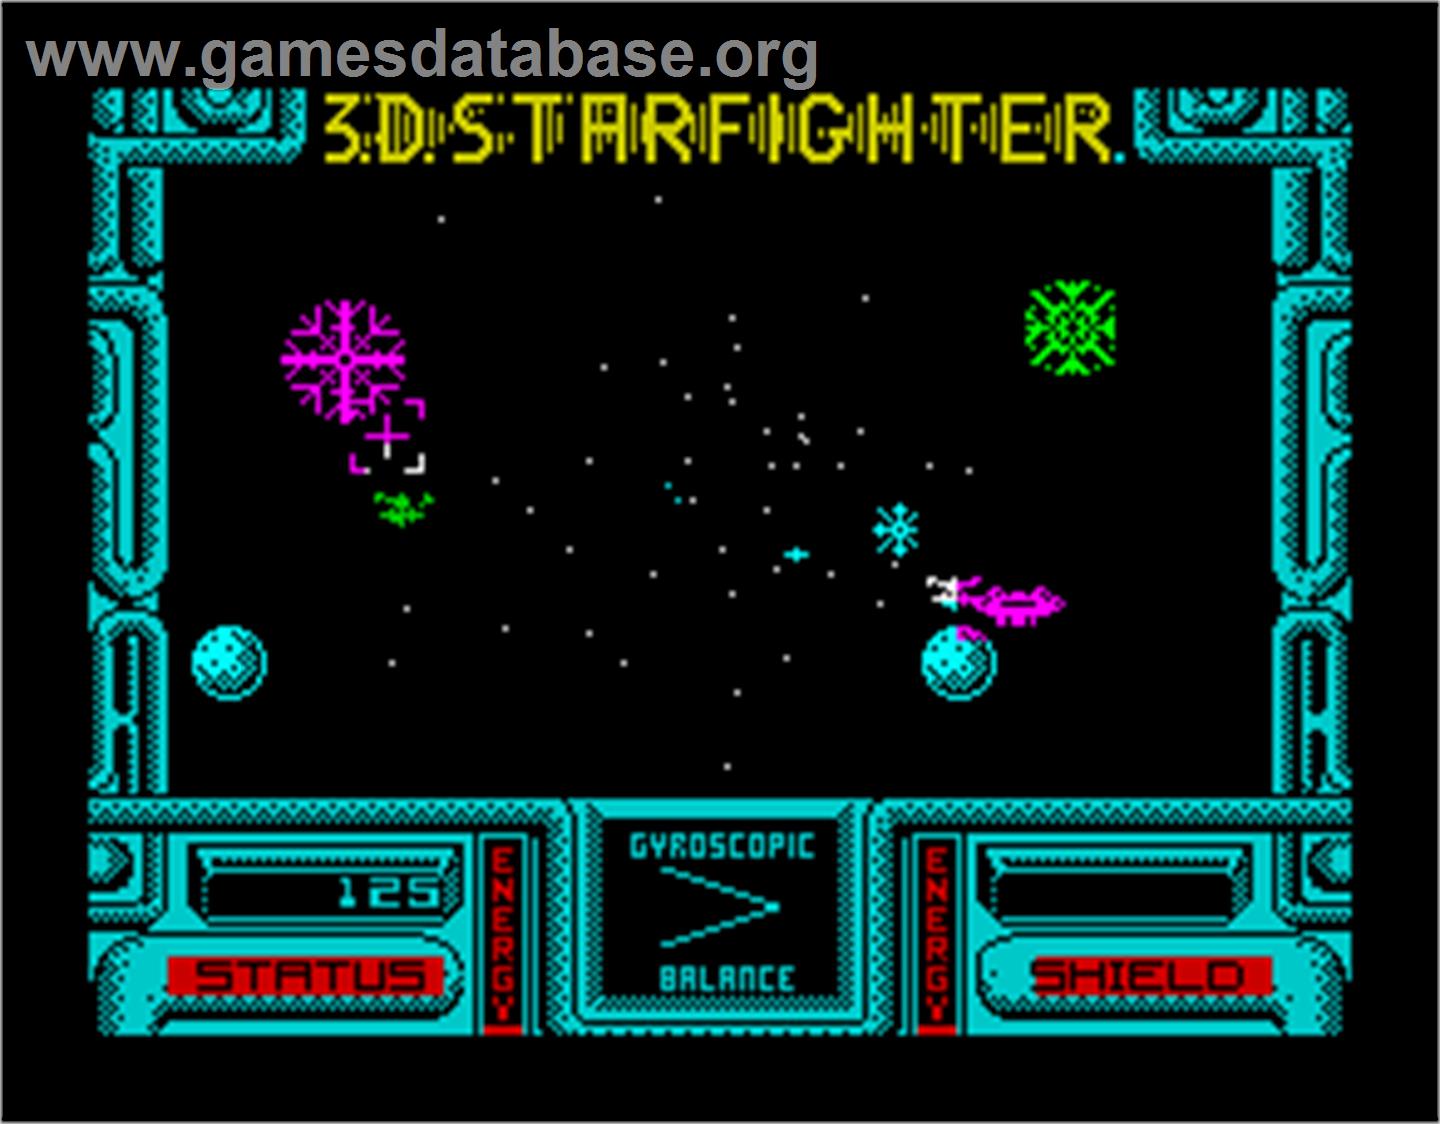 3D Starfighter - Sinclair ZX Spectrum - Artwork - In Game